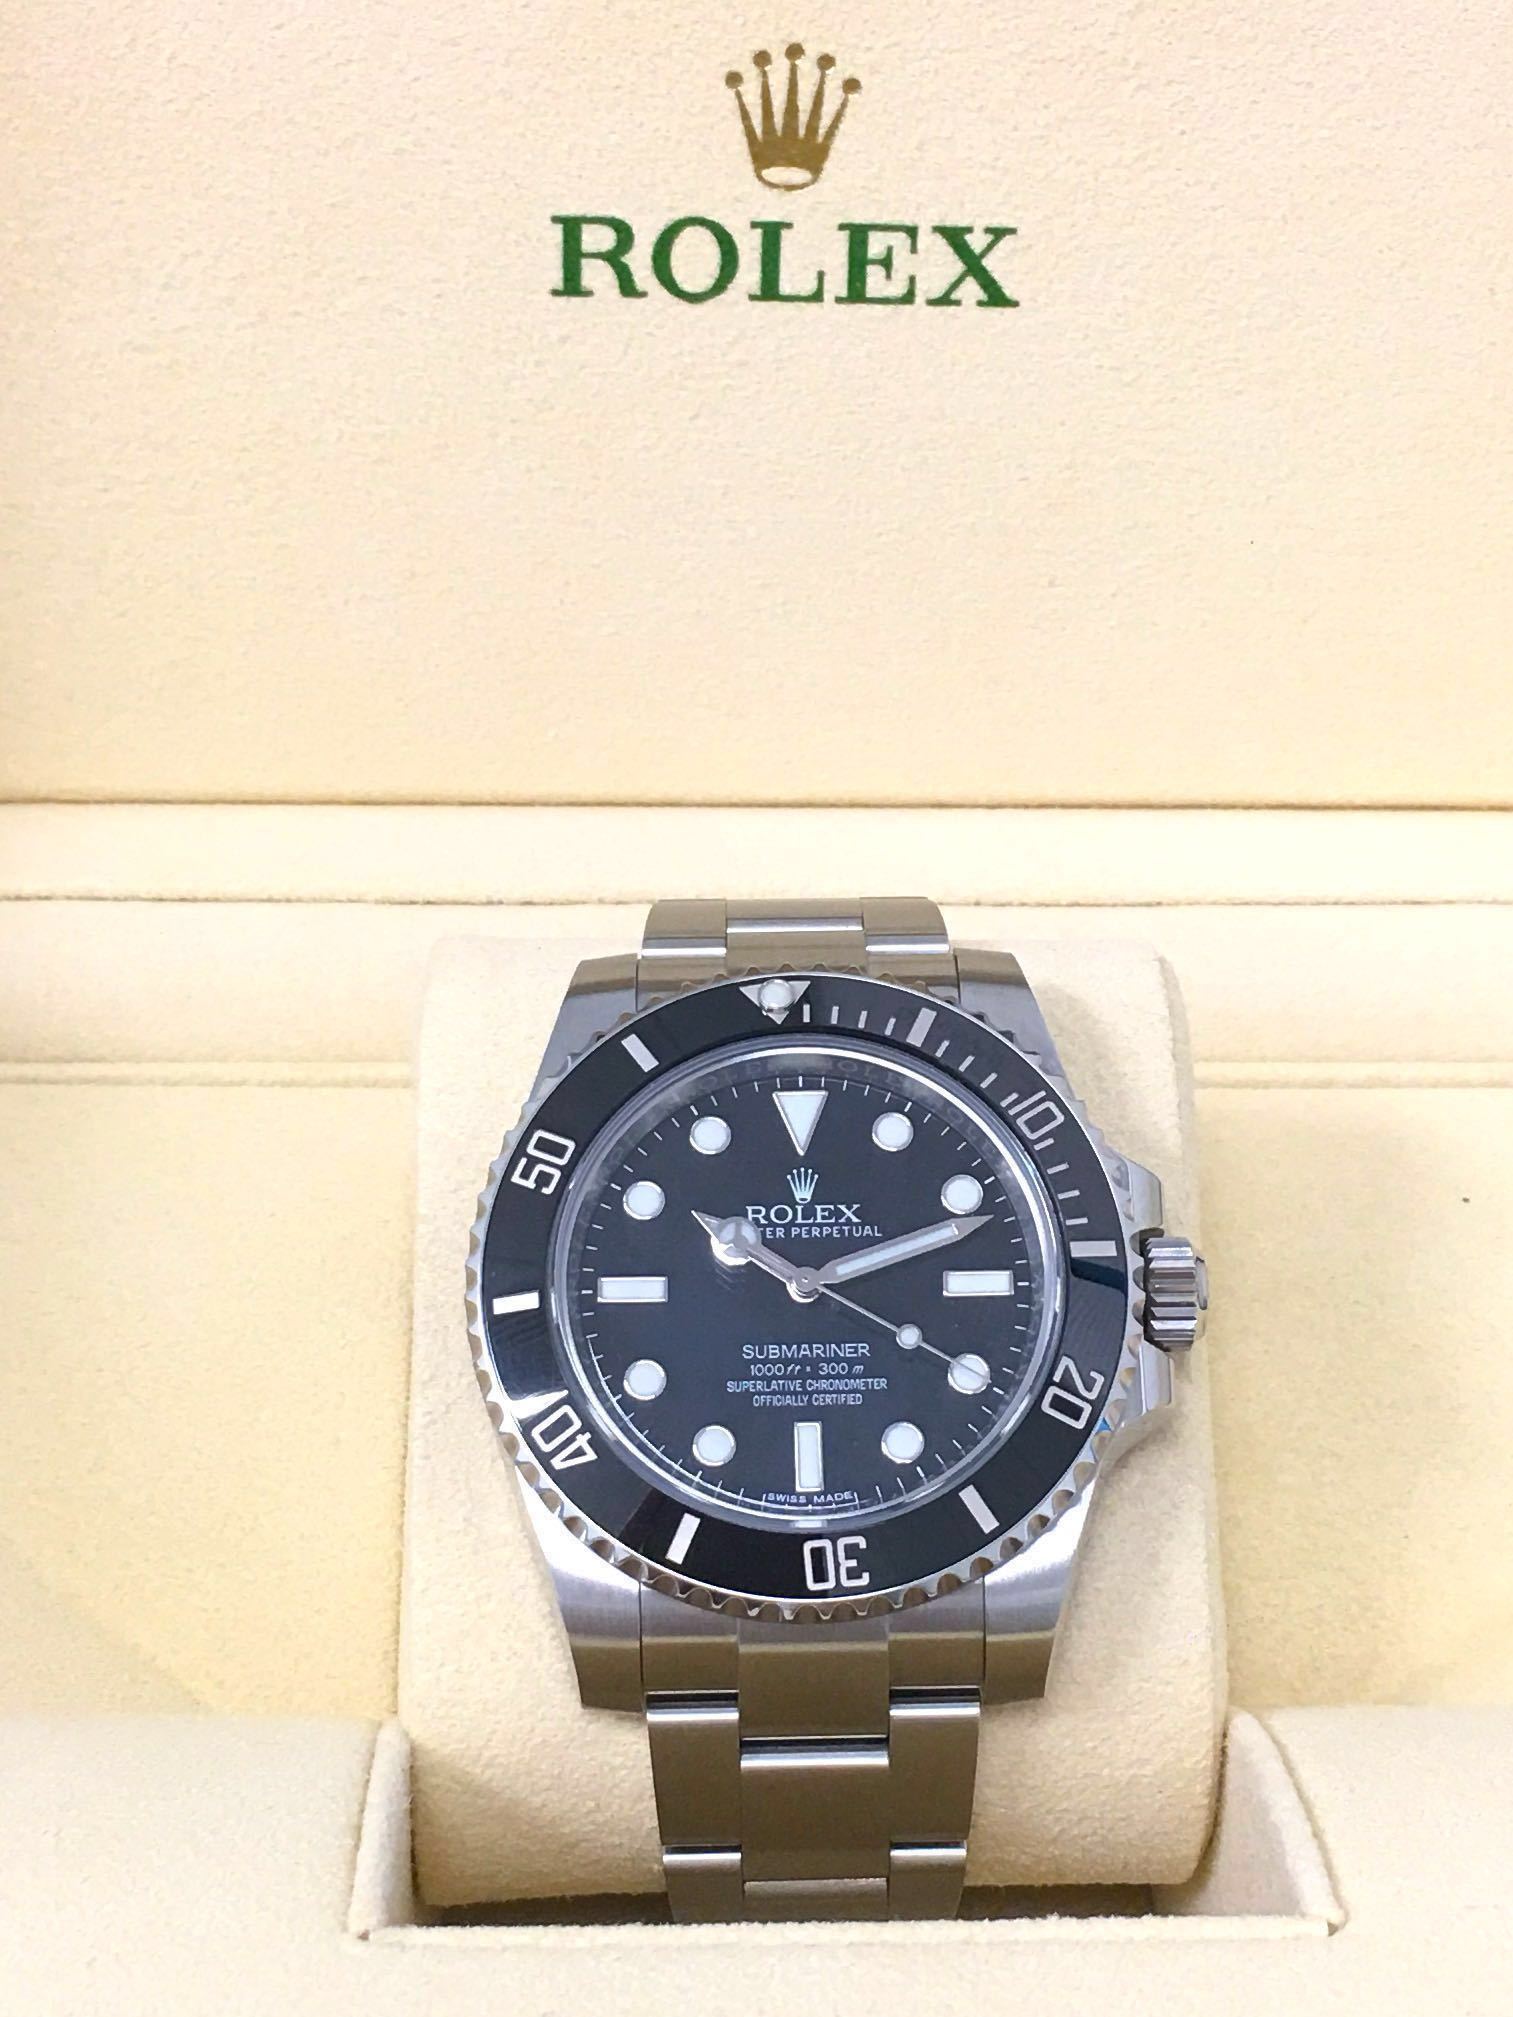 Rolex Submariner No Date 114060LN 